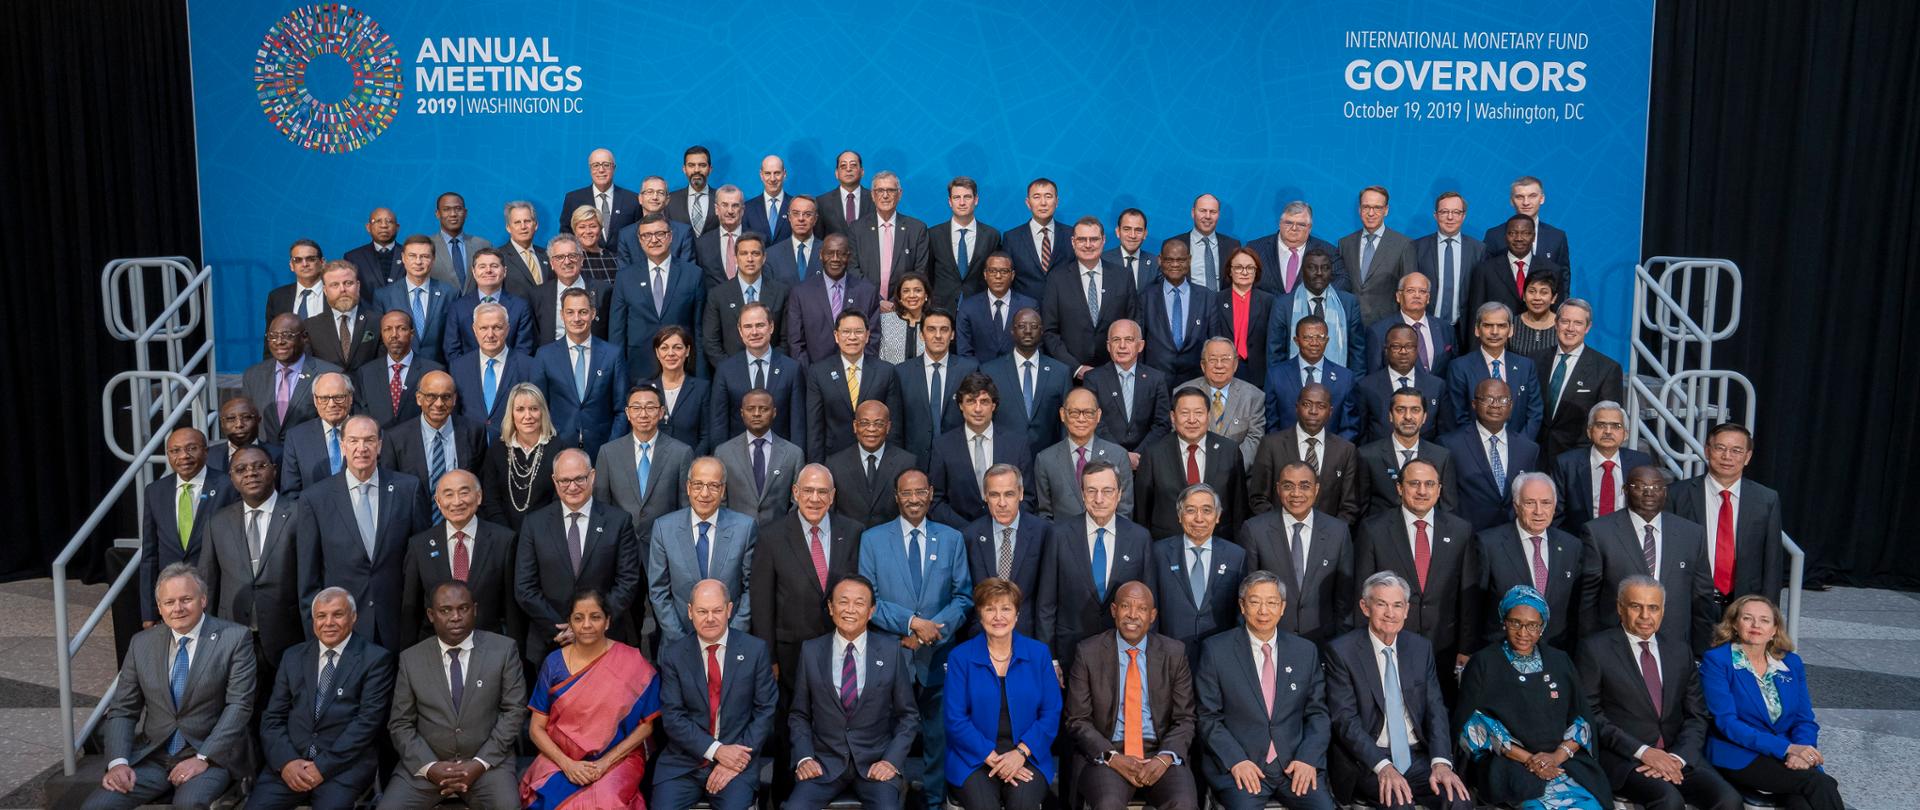 Uczestnicy spotkania Annual Meetings 2019 w Waszyngtonie na tle banera